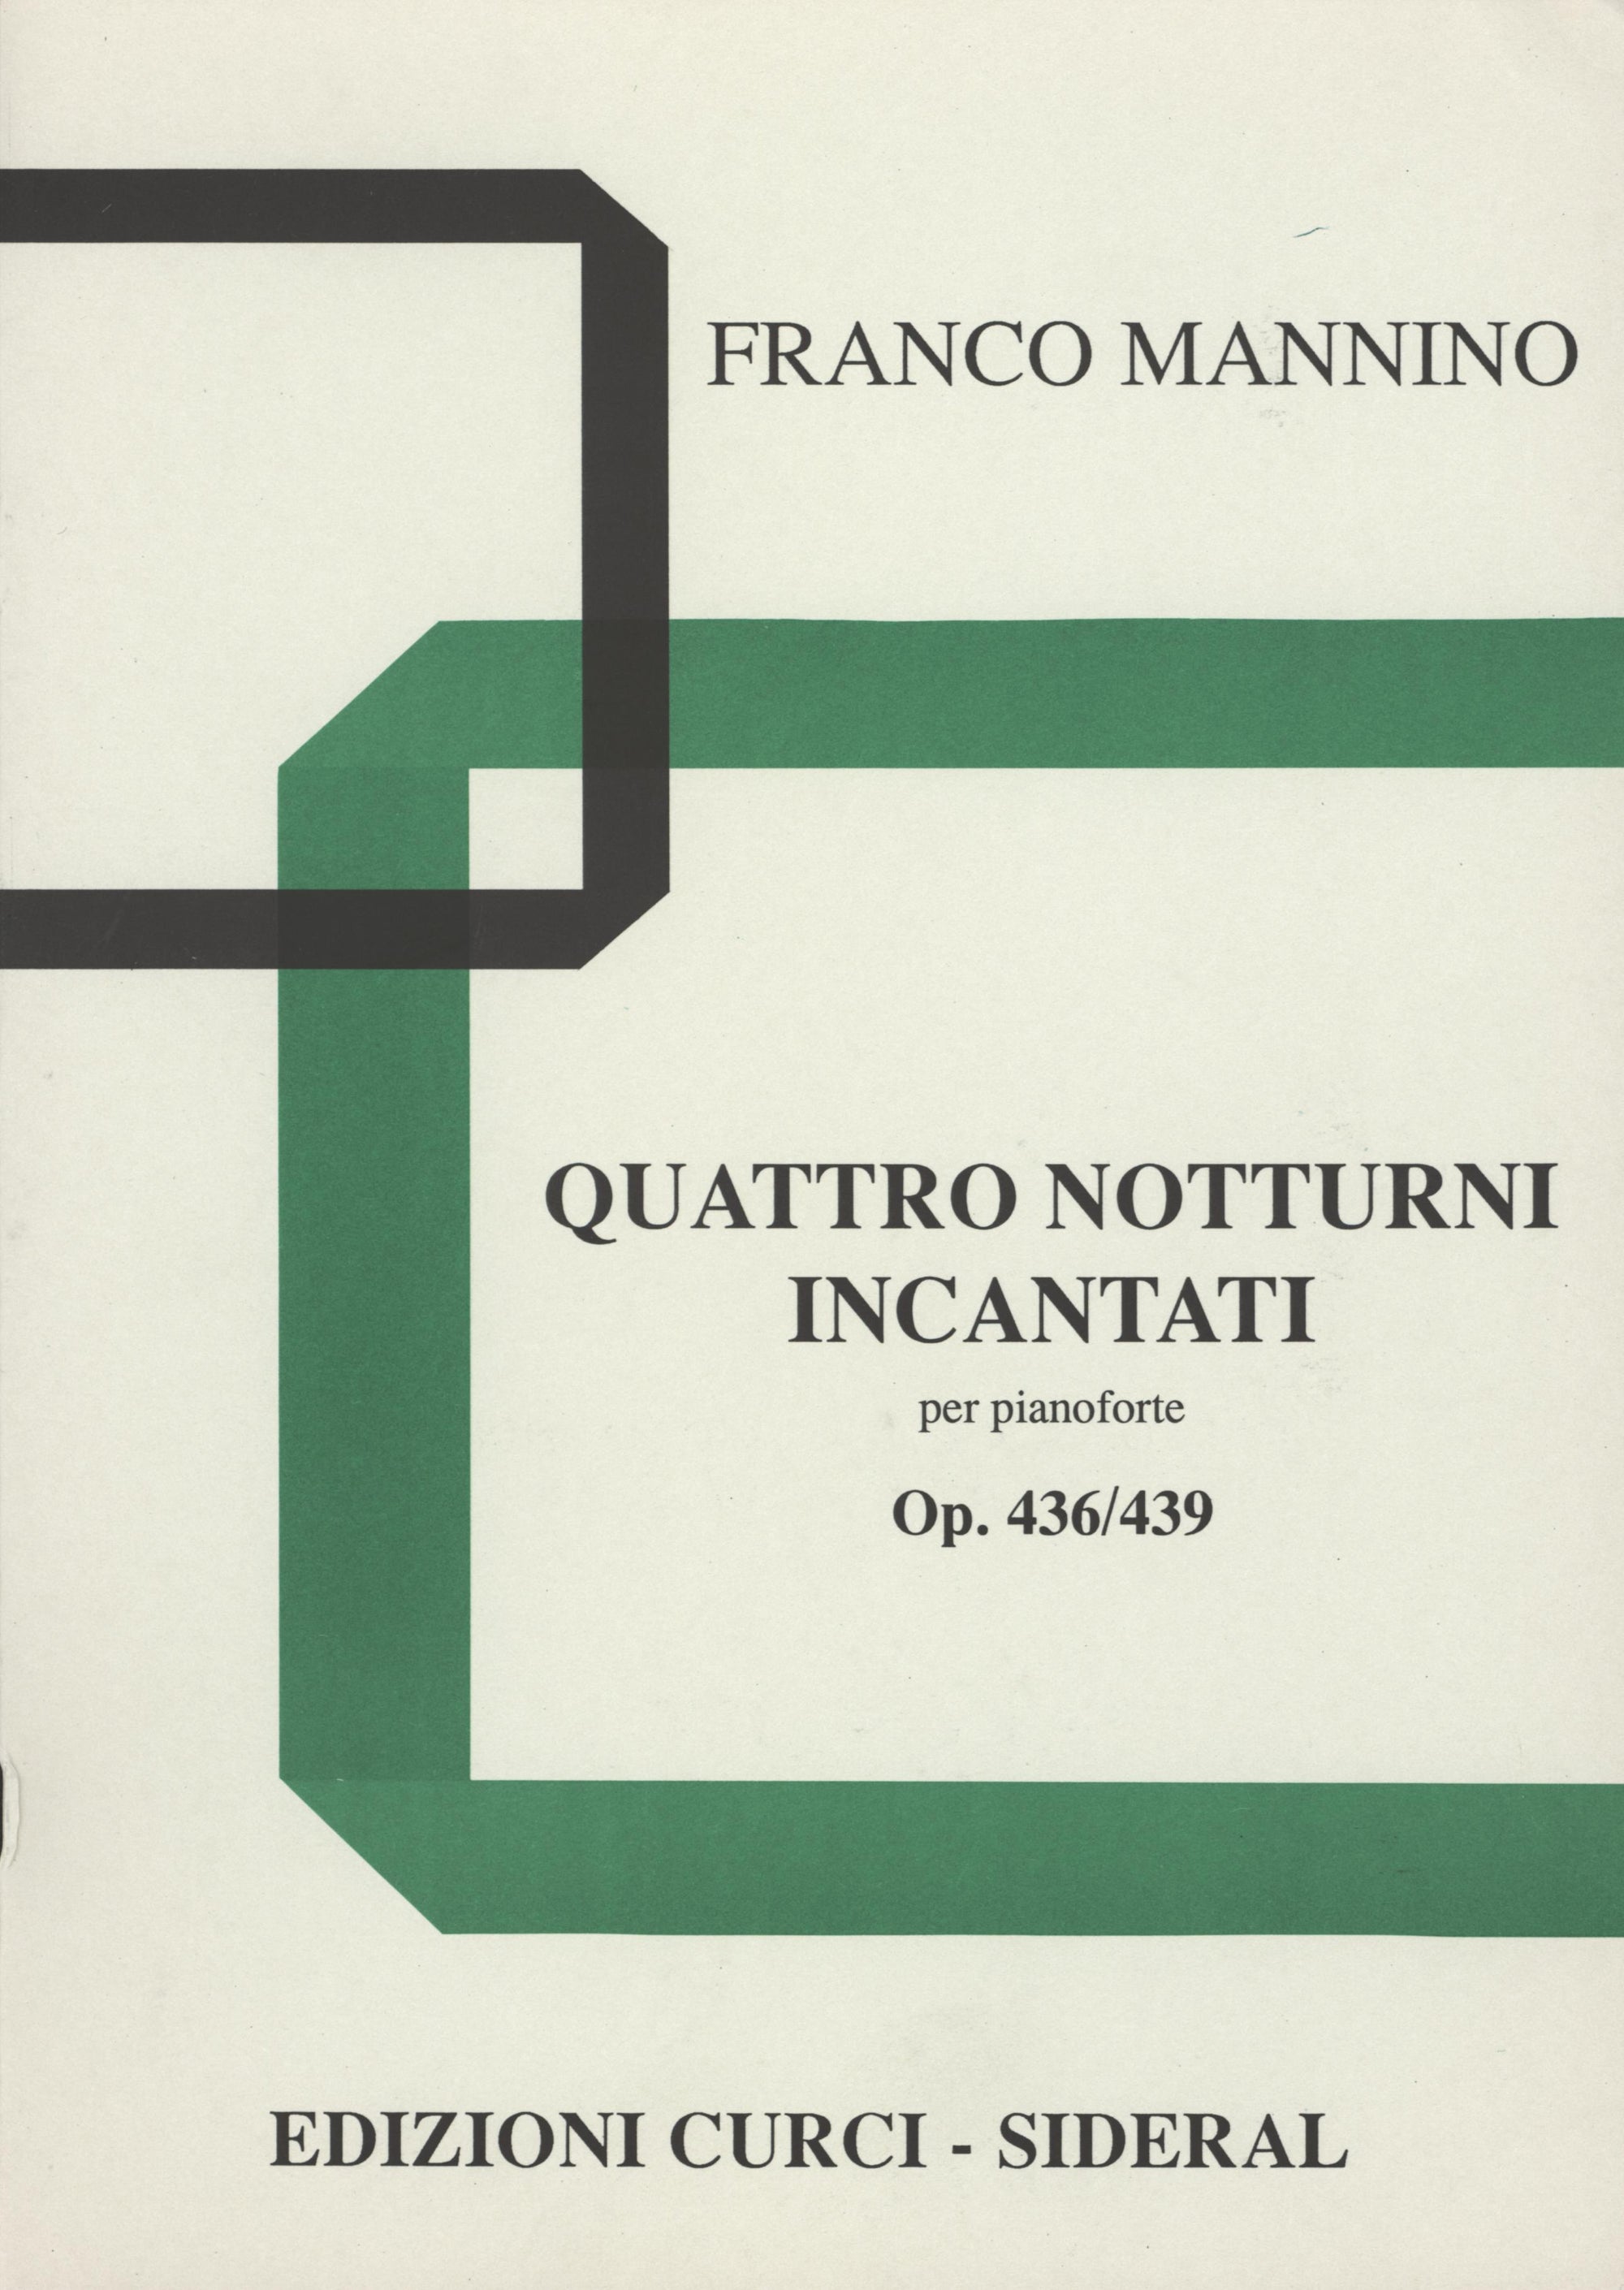 Mannino: Quattro notturni incantati, Opp. 436-439